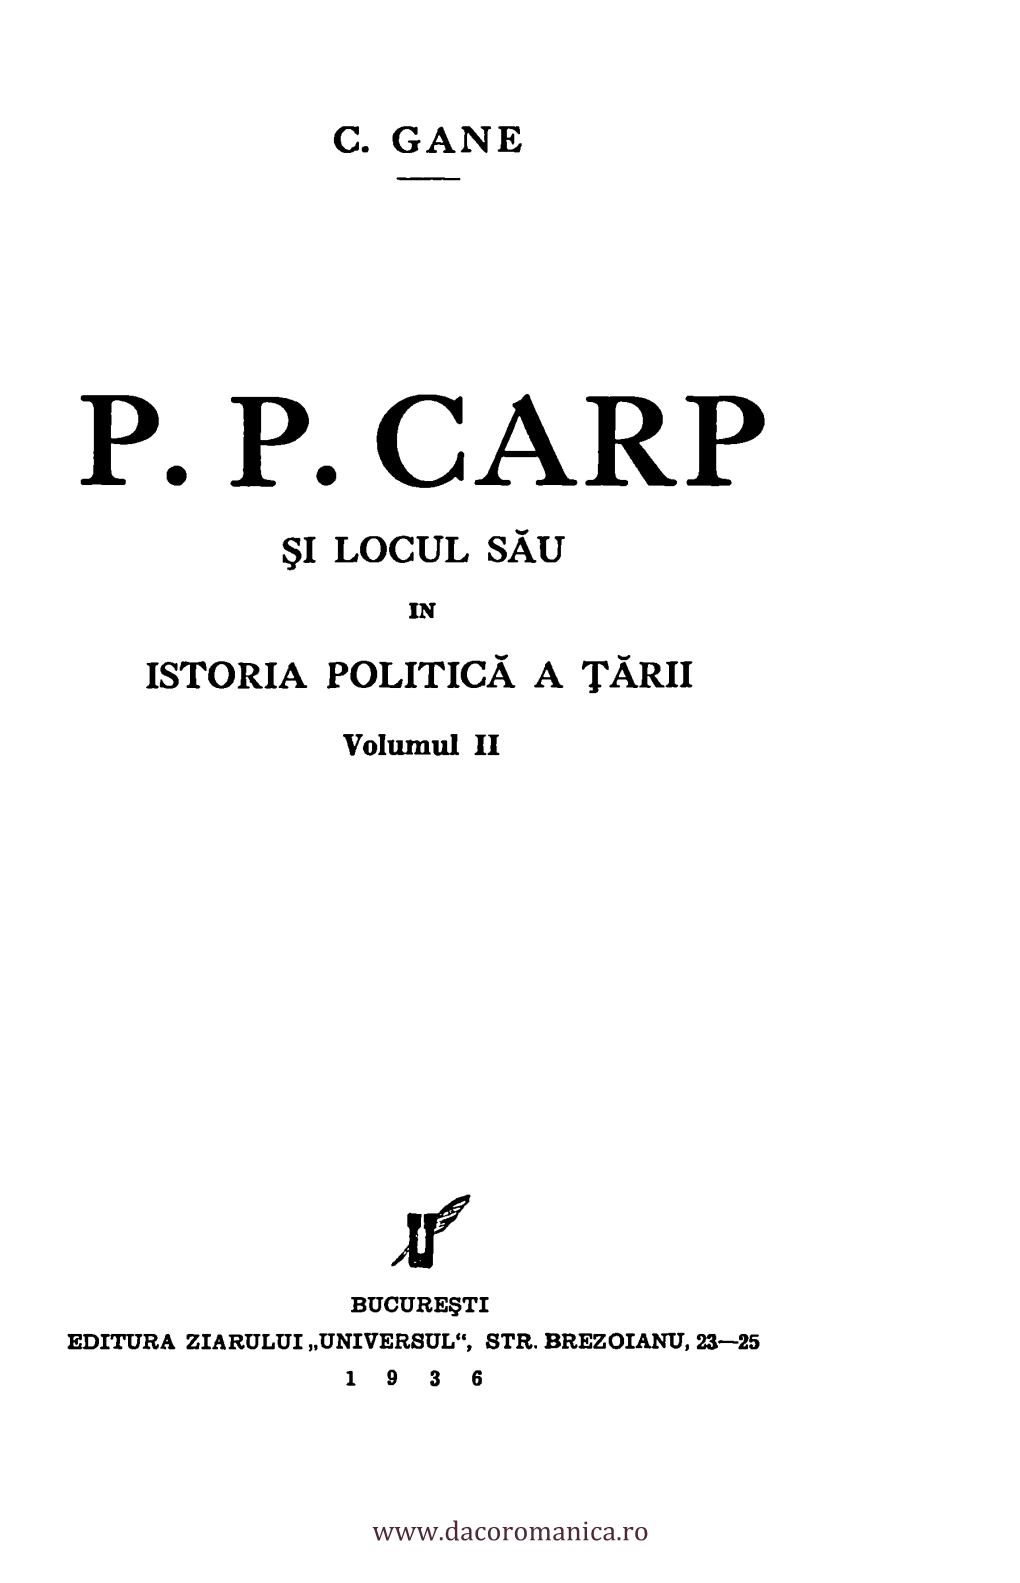 P. P. CARP SI Locul Siku in ISTORIA POLITICA a TÀ-RII Voiumul II